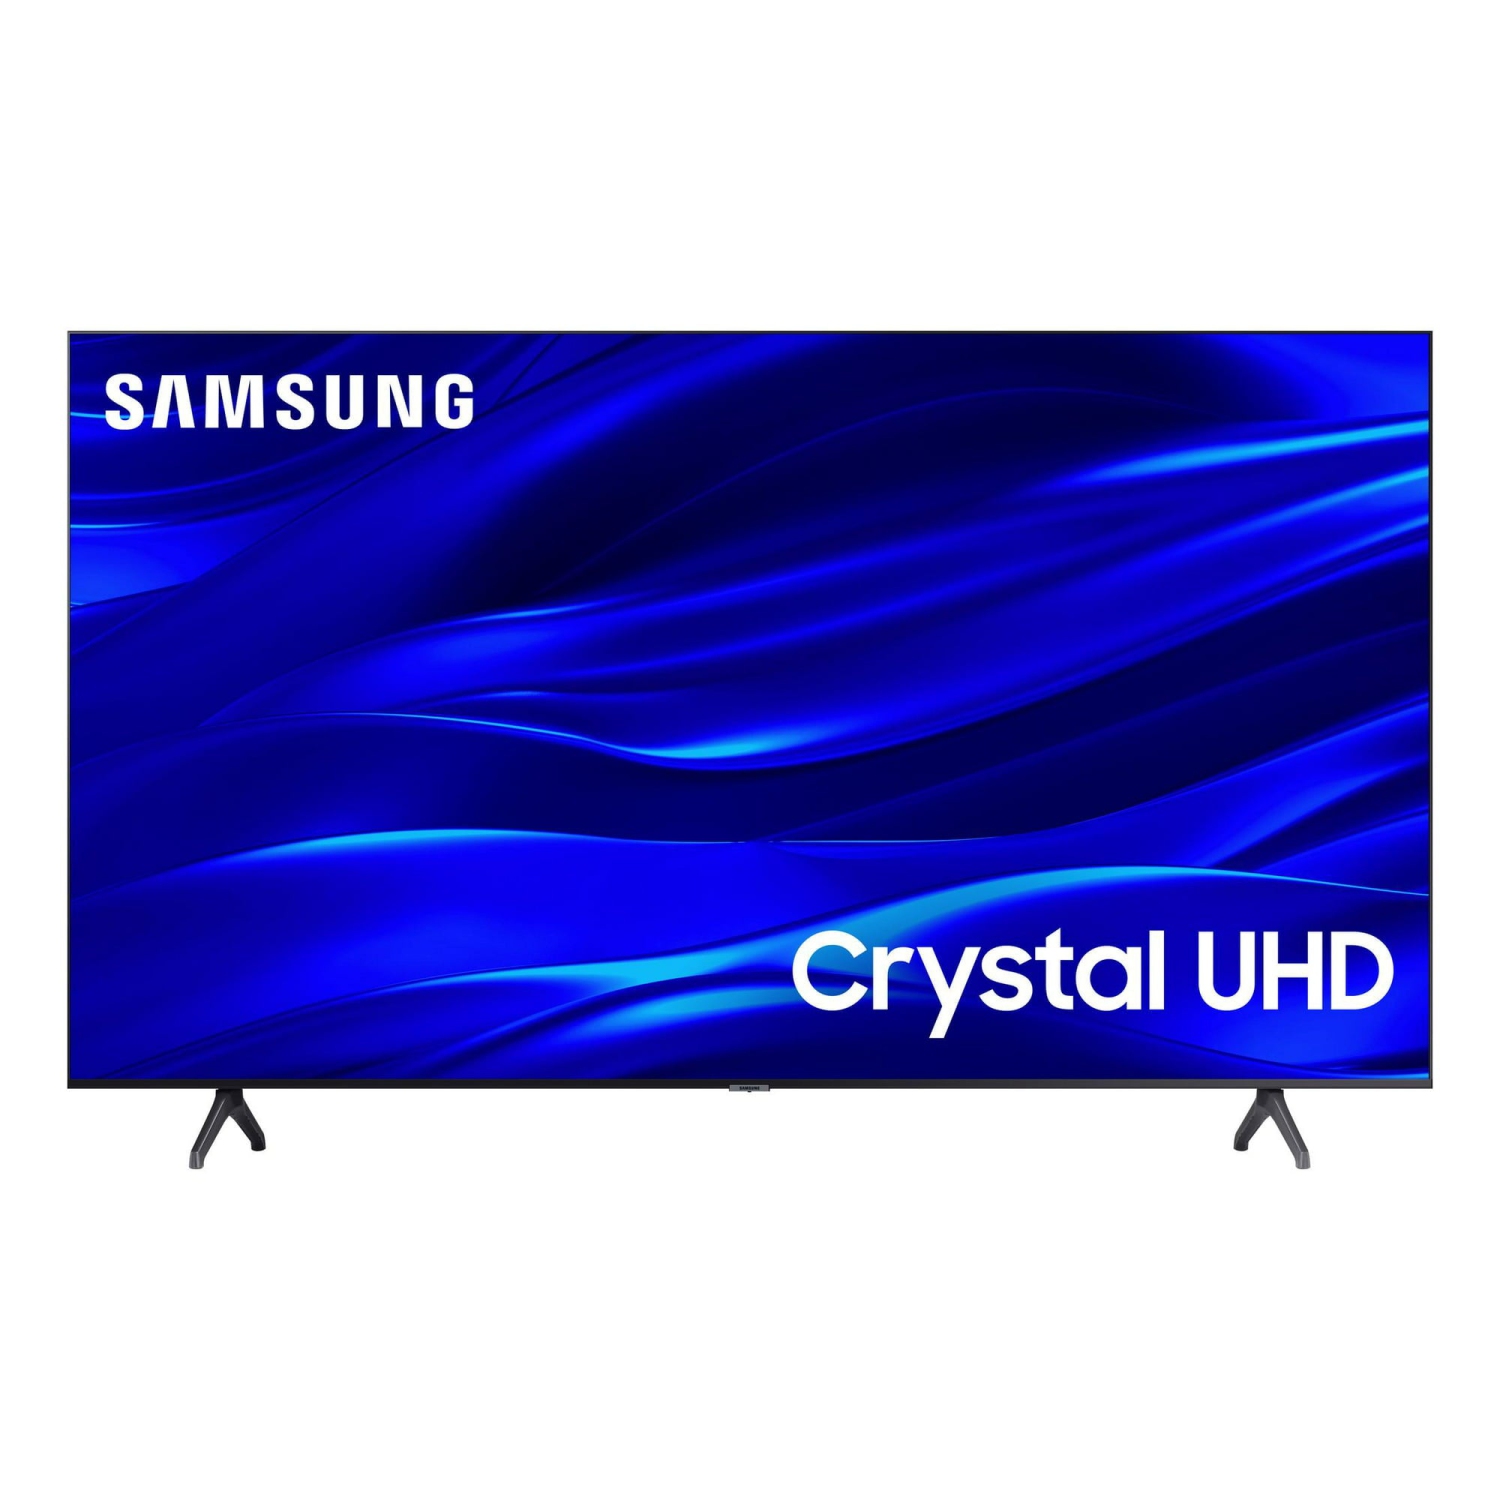 REFURBISHED (GOOD) -SAMSUNG 55" Class TU690T Crystal UHD 4K Smart Television (UN55TU690T)